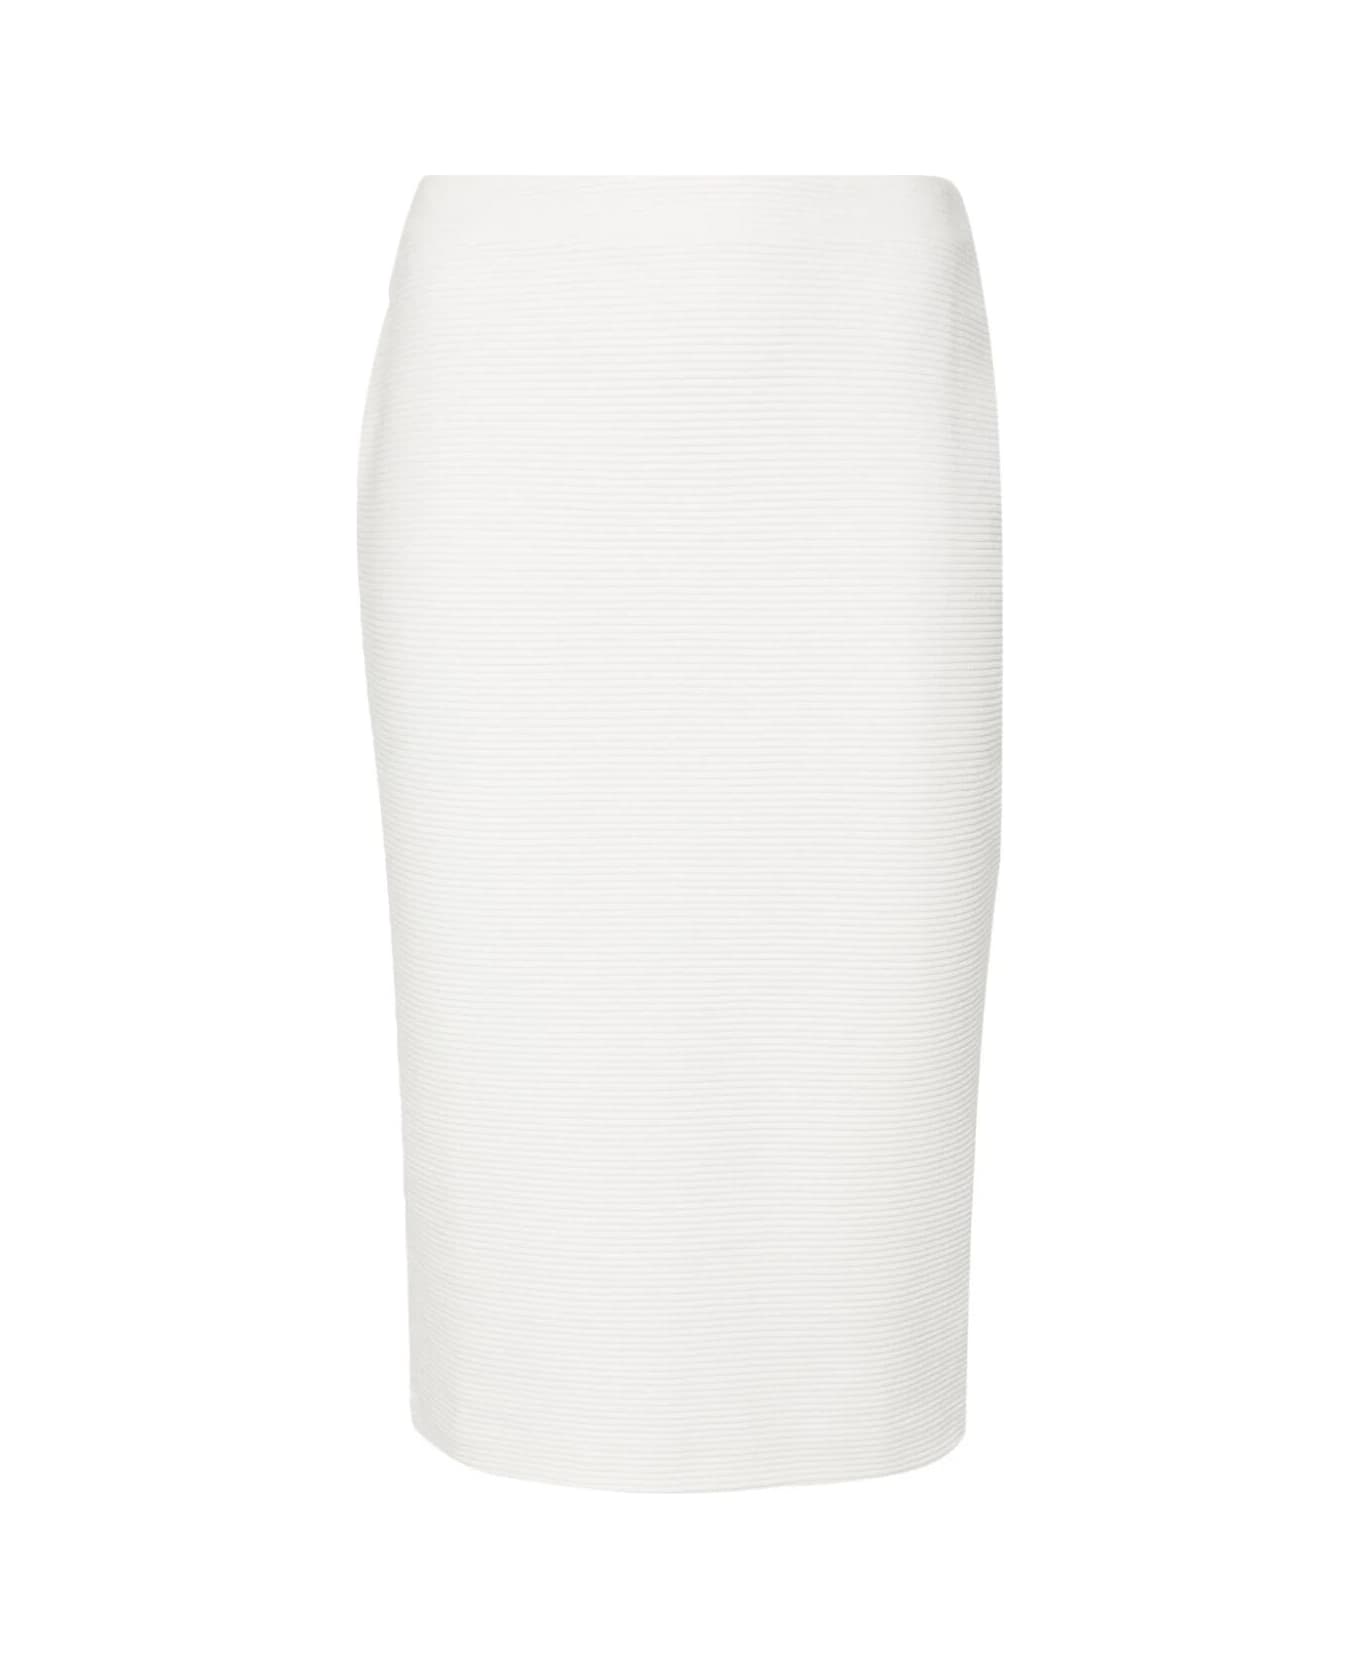 Emporio Armani Longuette Skirt - Warm White